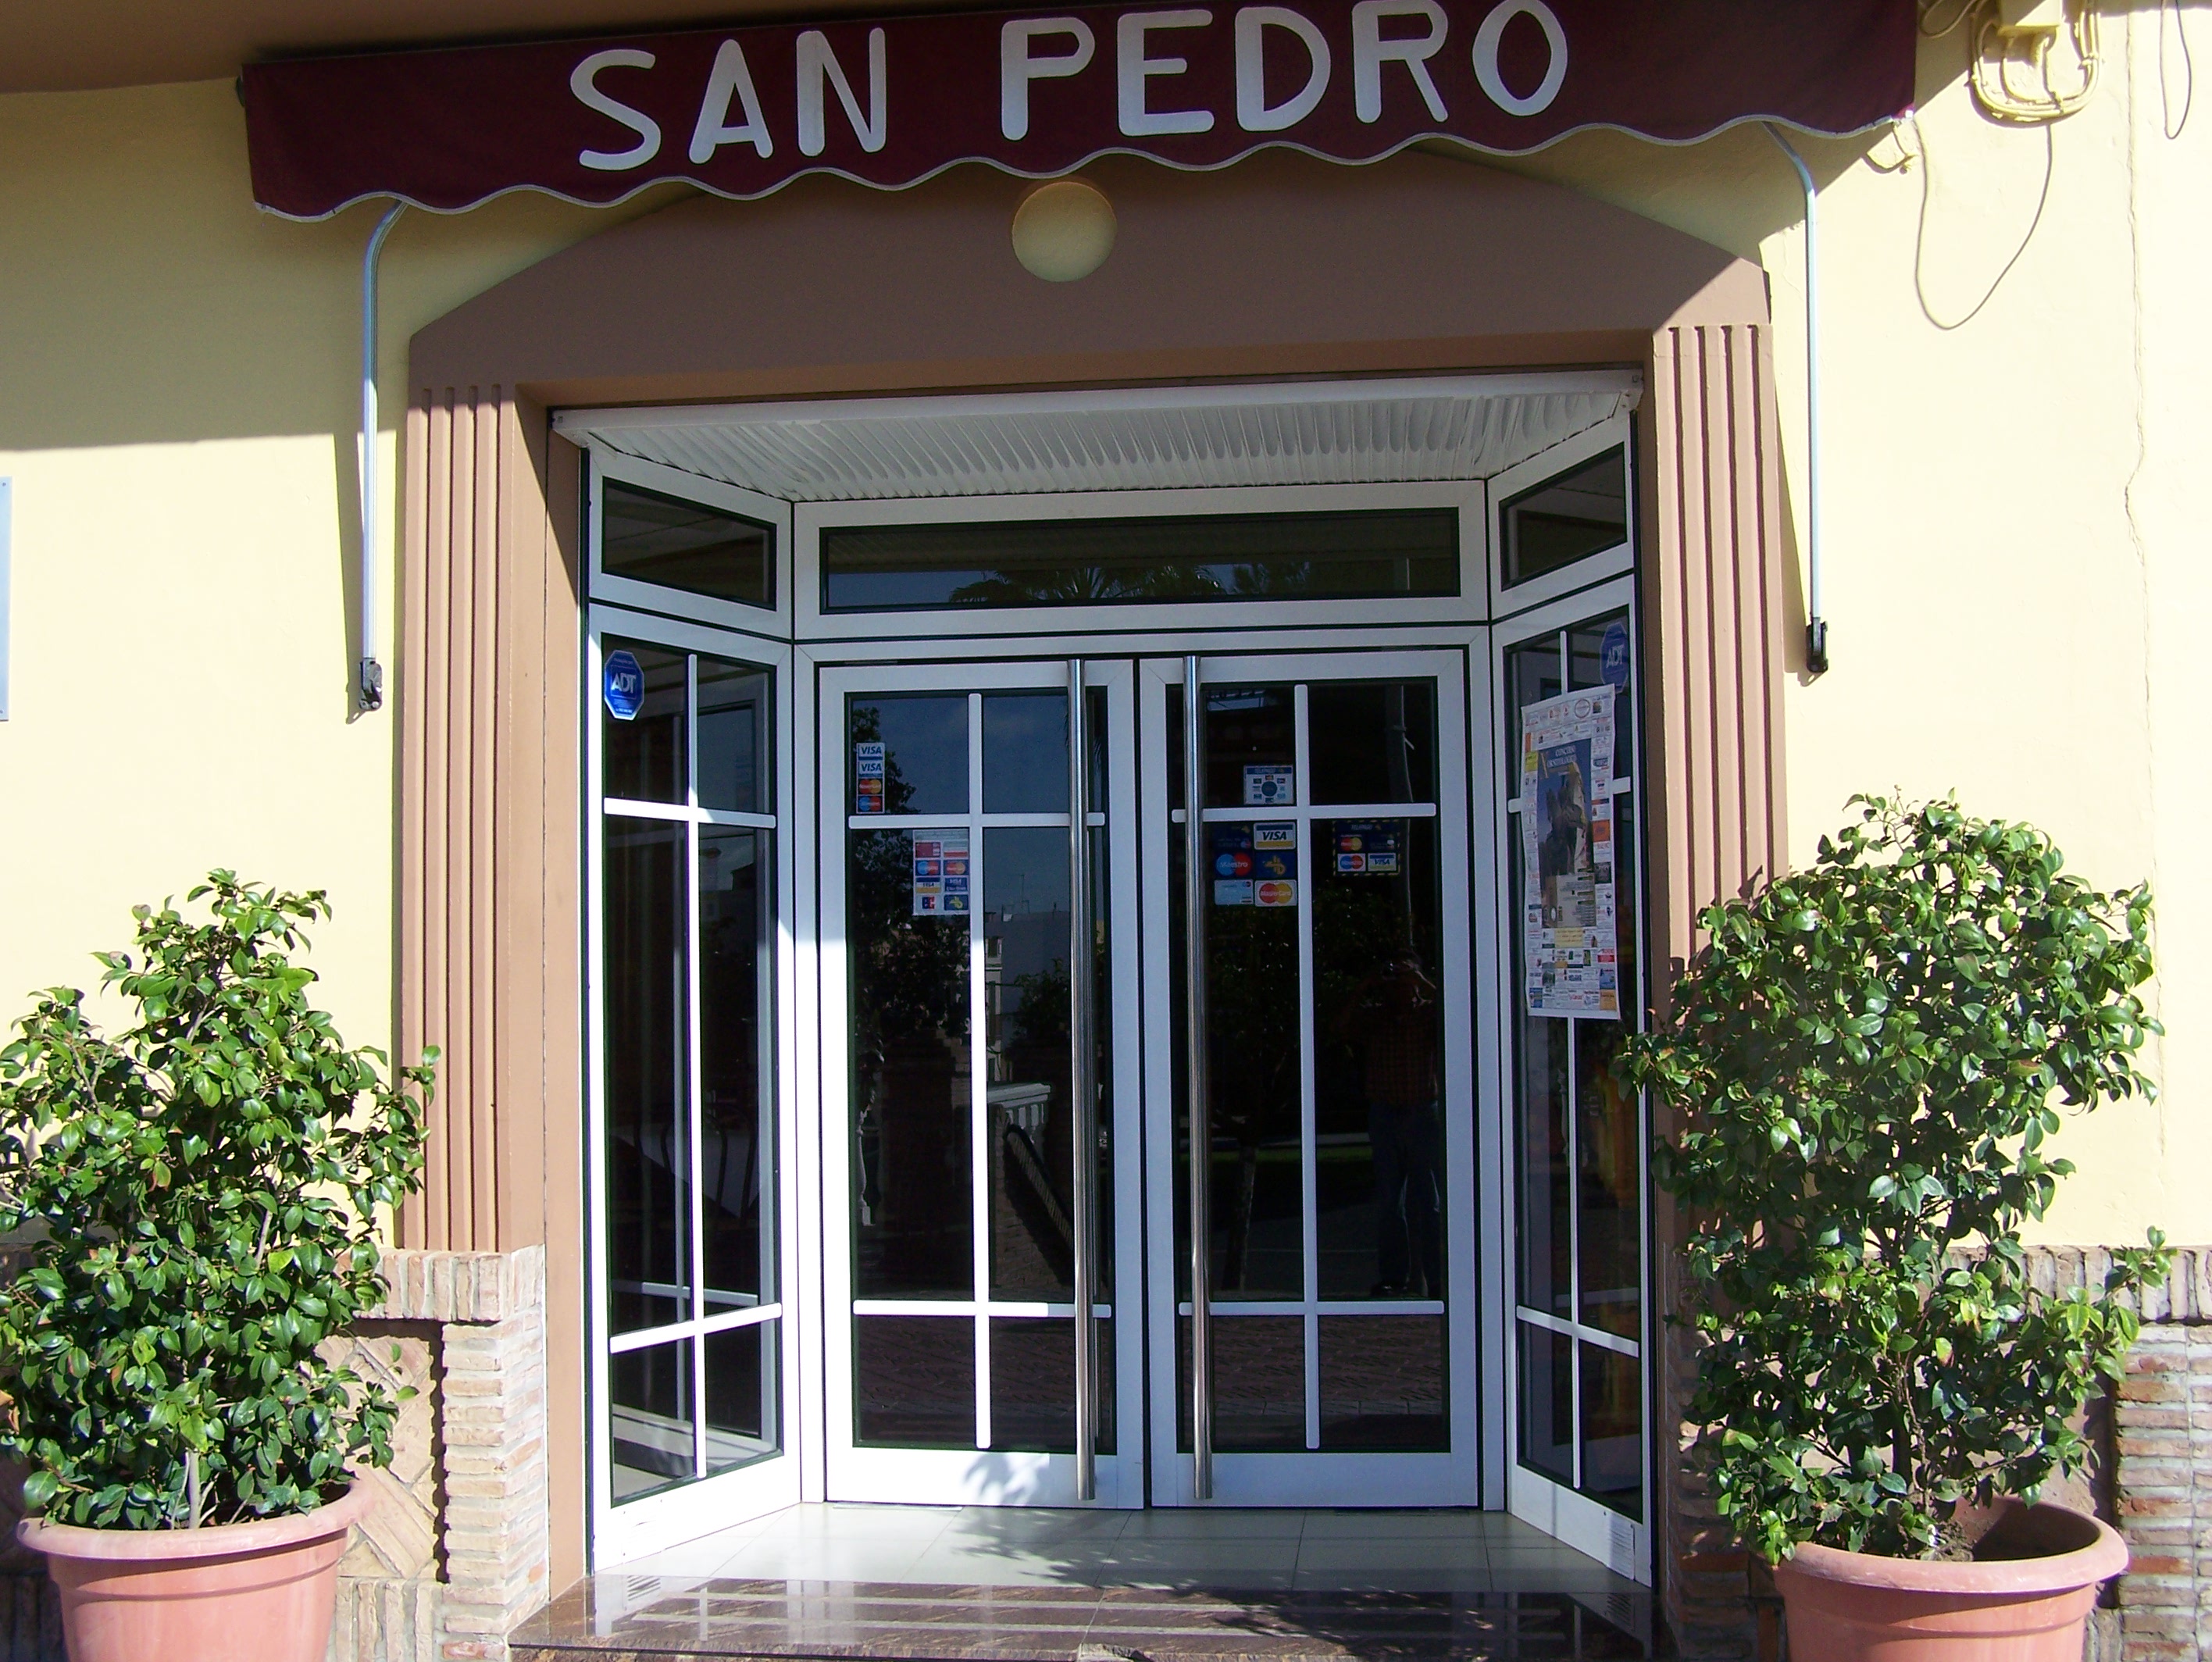 Acceso al Bar San Pedro